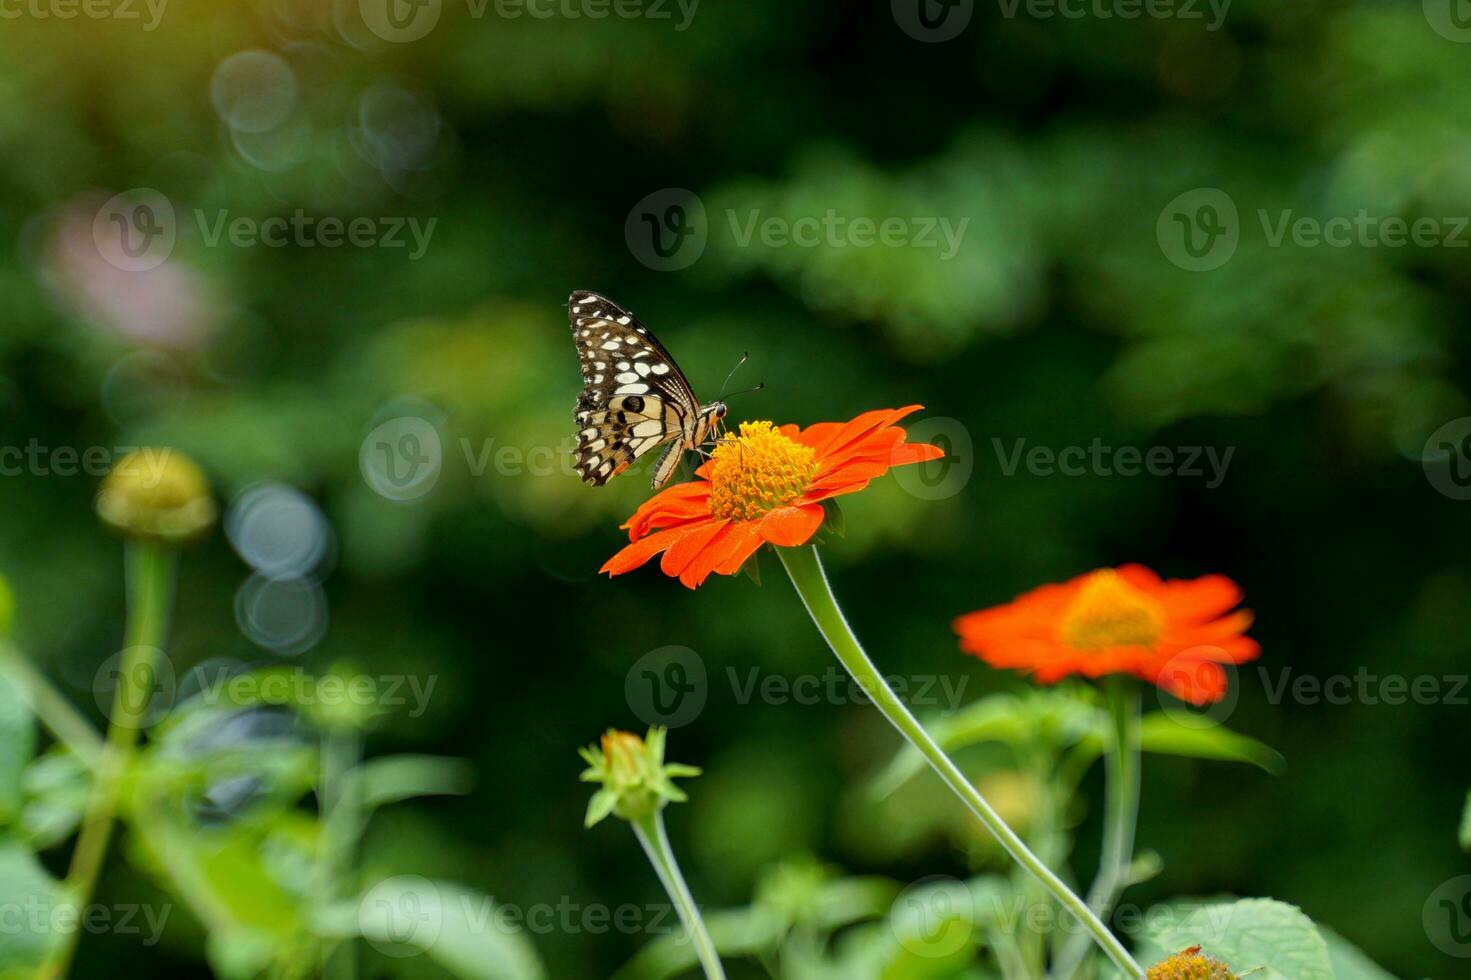 vlinders voeden Aan nectar van tithonia rotundifolia bloemen, een onderling gunstig verhouding tussen verschillend organismen in een ecosysteem. vlinders voeden en bestuiven bloemen. foto